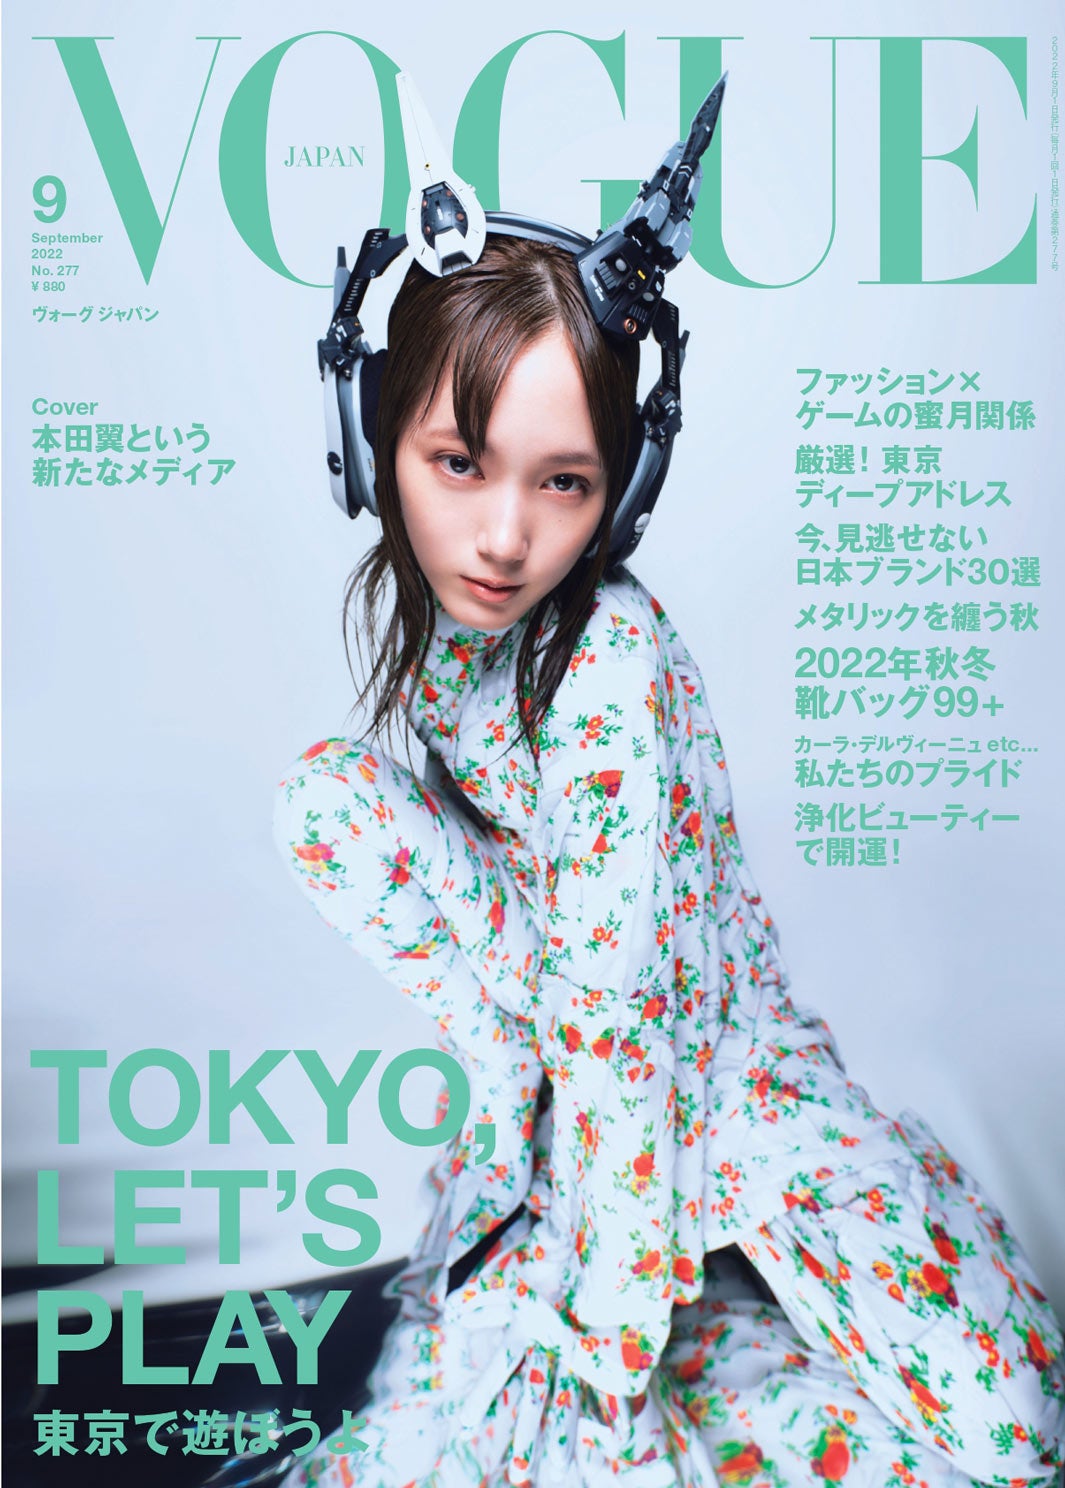 本田翼「VOGUE JAPAN」表紙初登場 仕事とプライベートの切り替え方明かす - モデルプレス